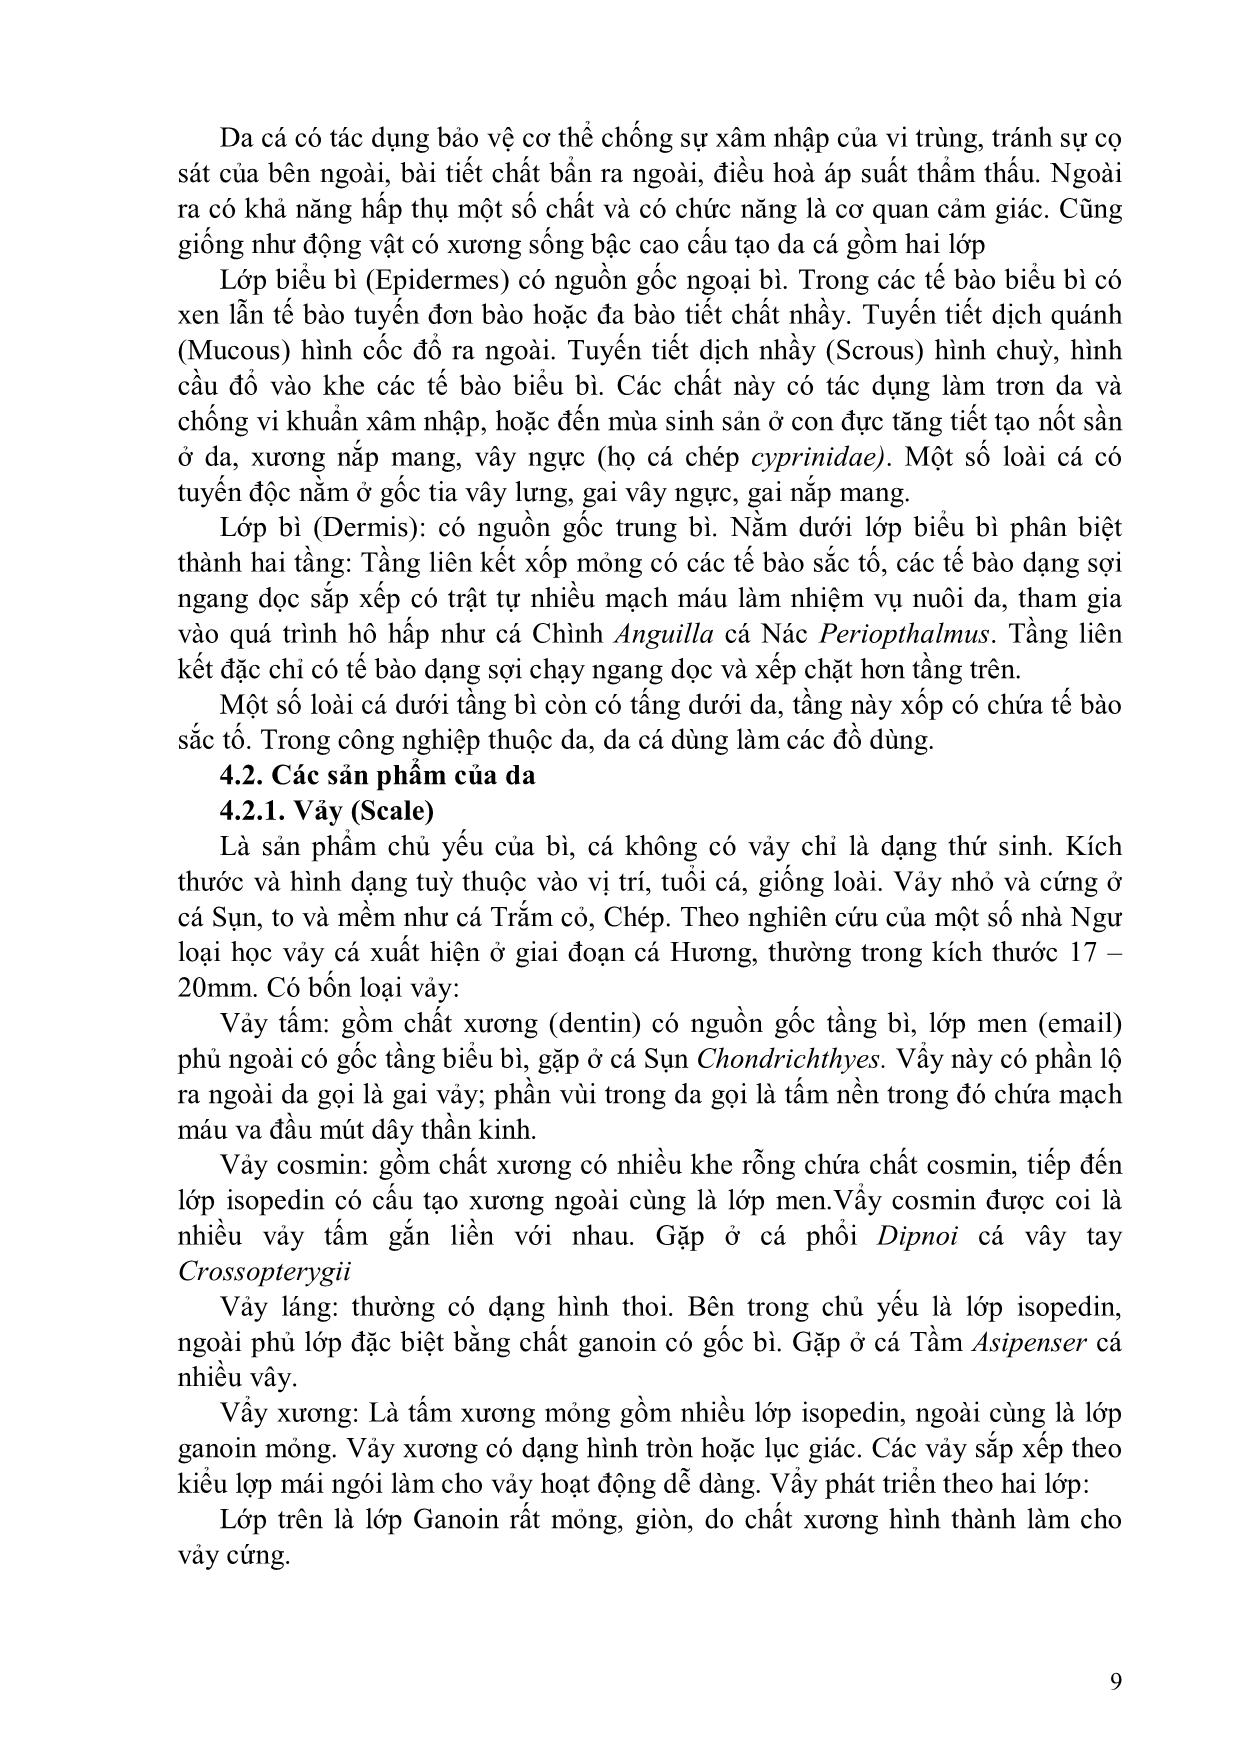 Bài giảng môn Ngư loại trang 9